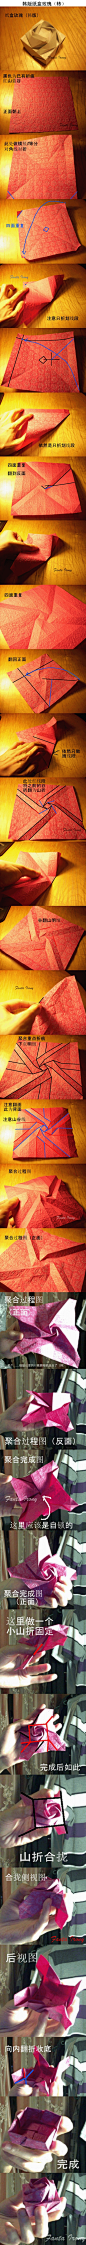 韩版纸盒玫瑰折纸(有点高难度哎)